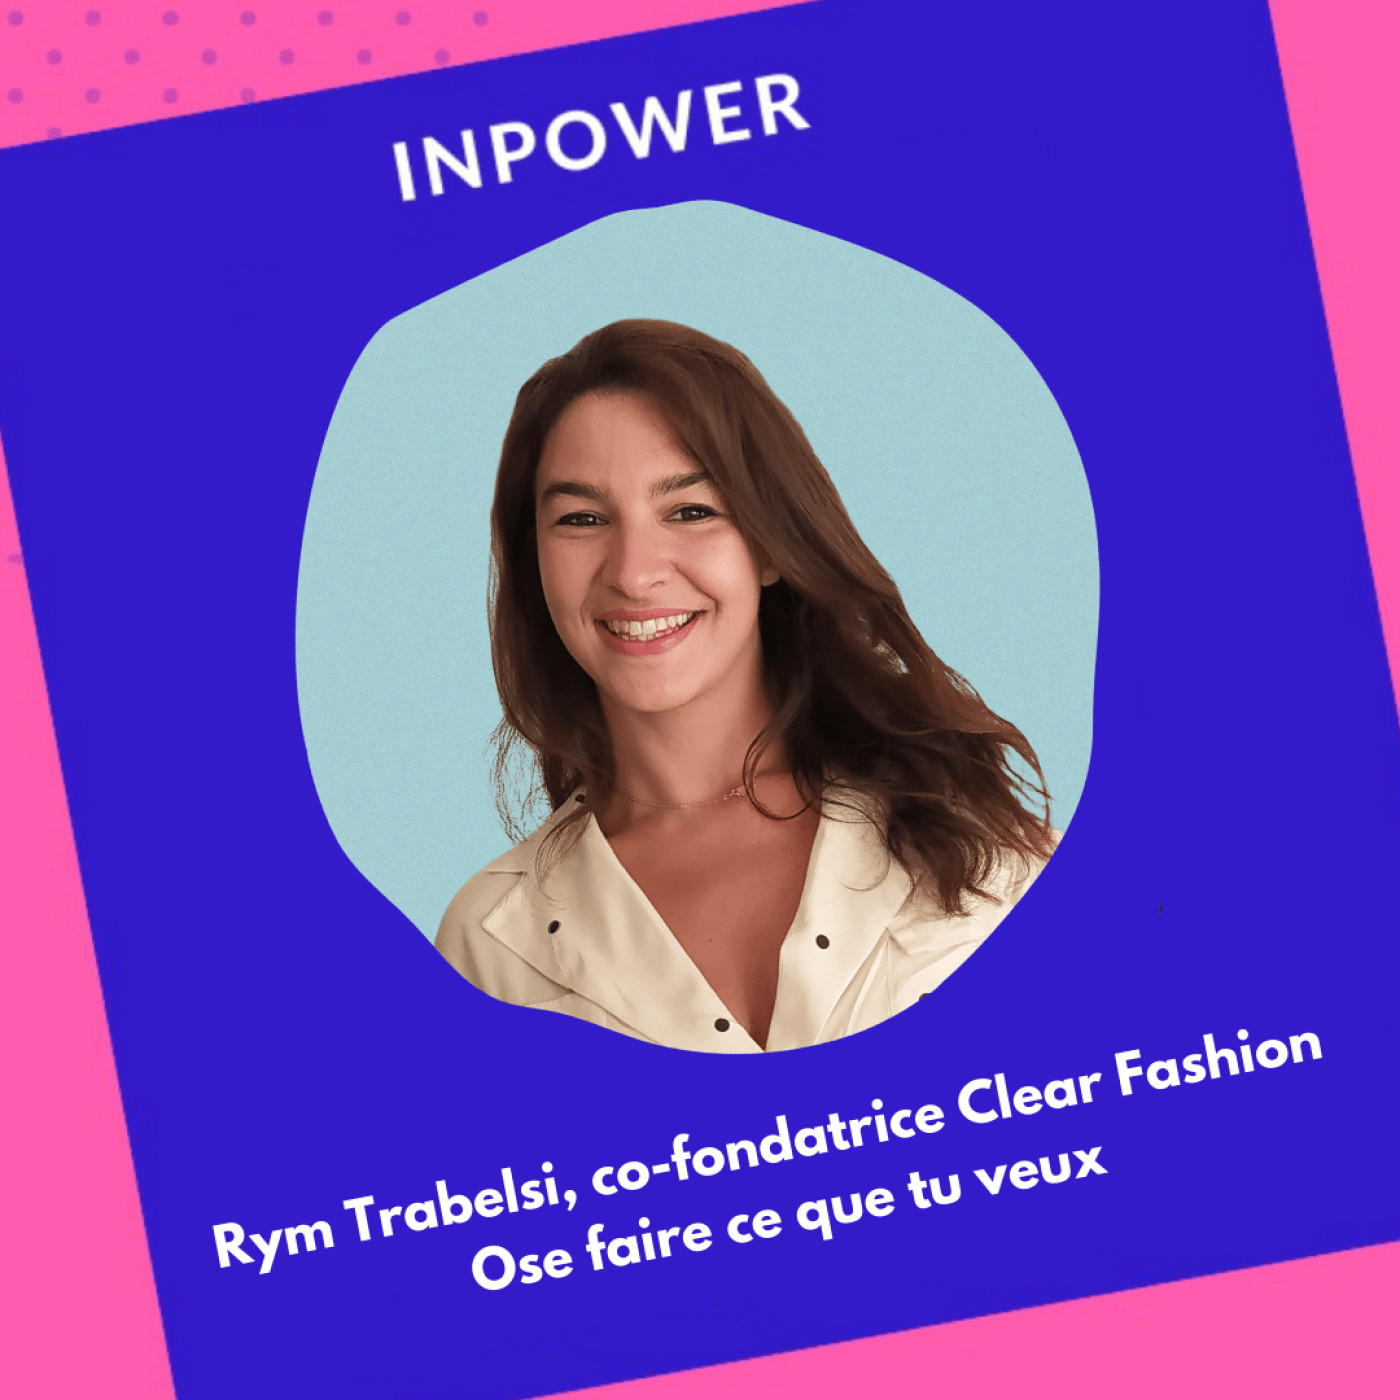 Rym Trabelsi, co-fondatrice de Clear Fashion - Ose faire ce que tu veux